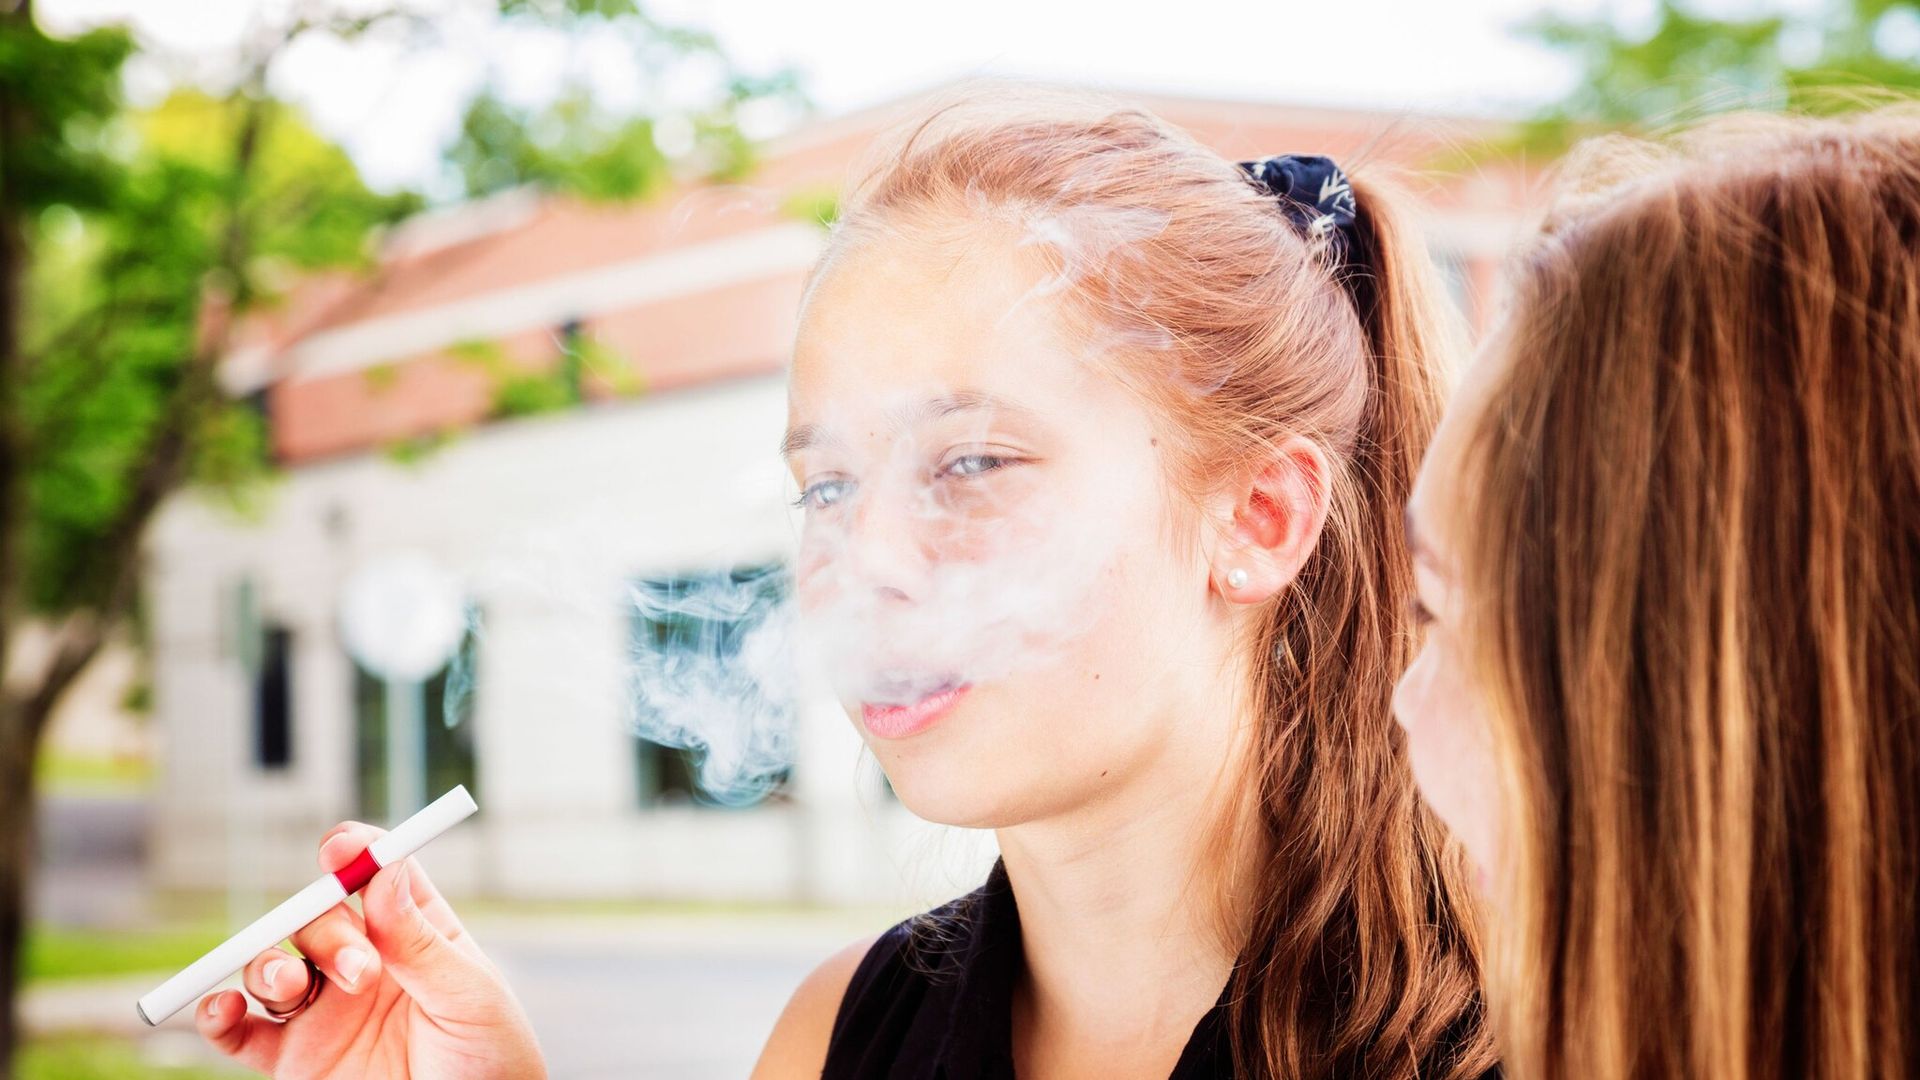 los adolescentes se inician en la tabaco a trav s del vapeo